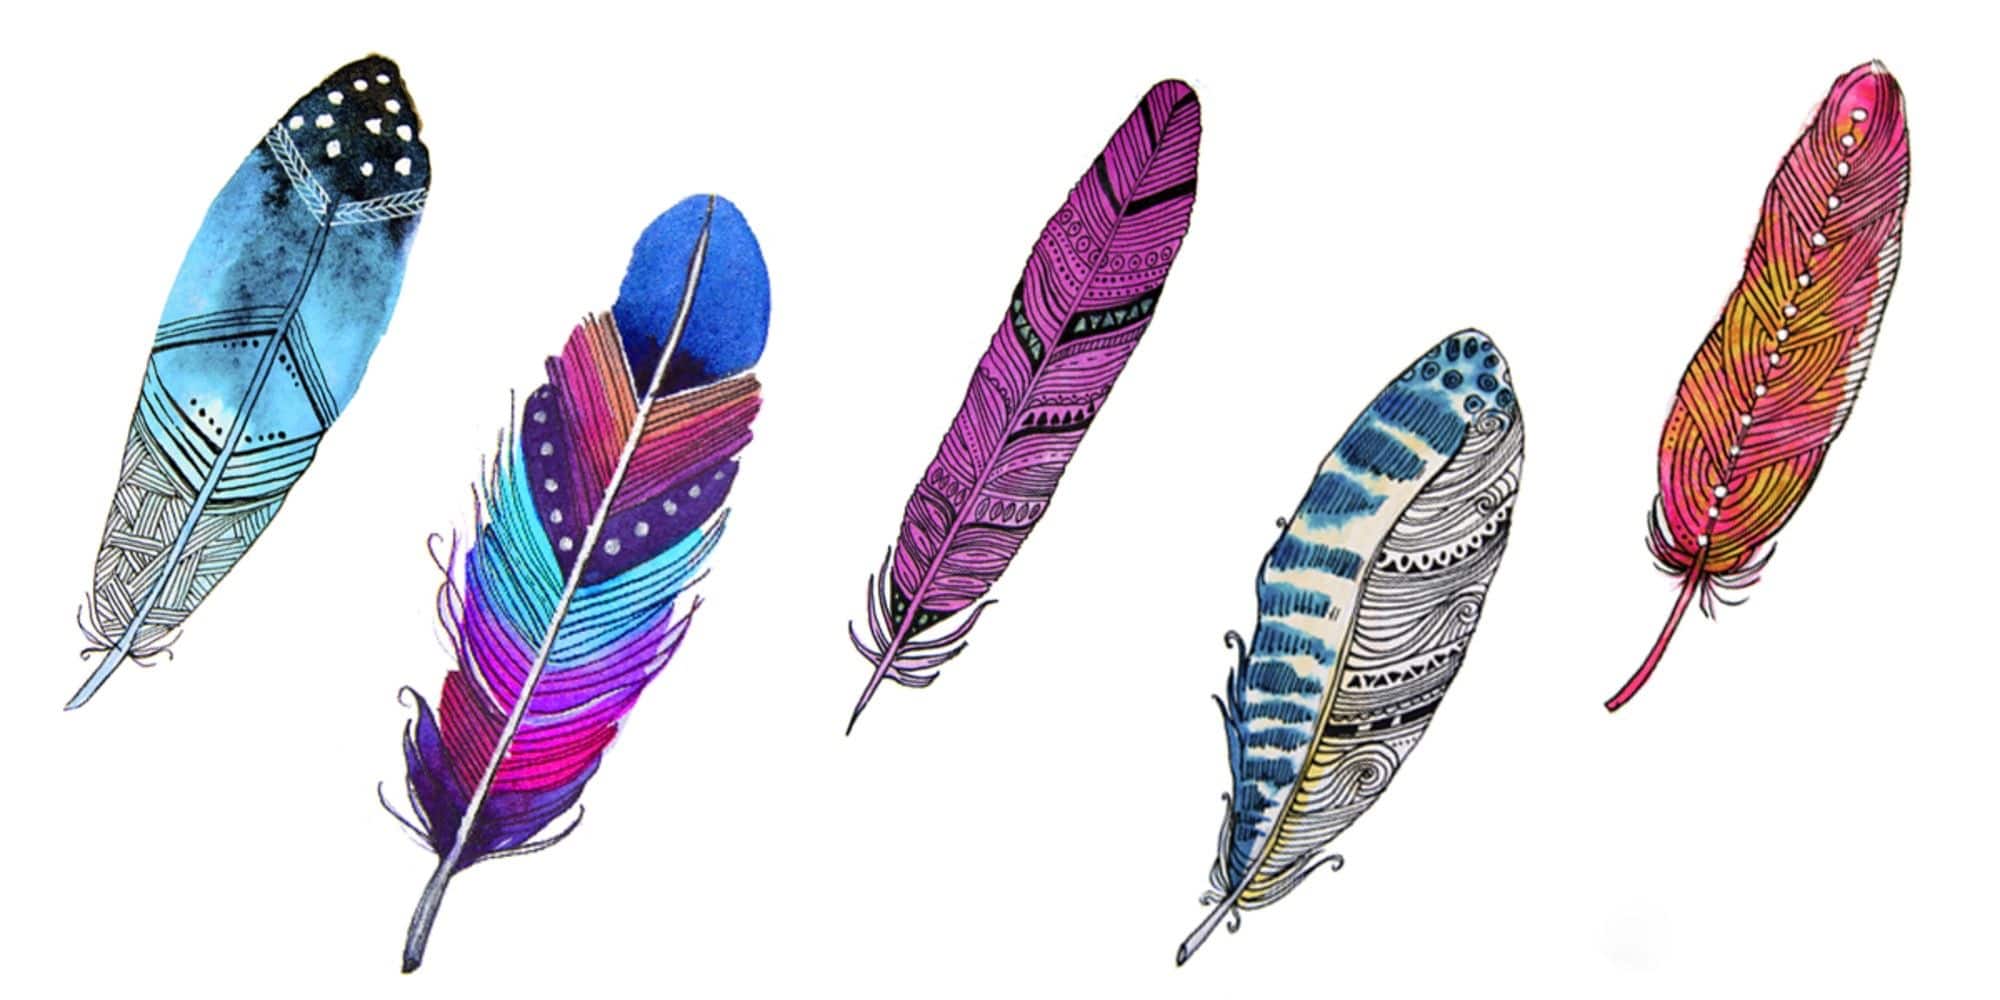 Test des plumes : choisissez la plume qui vous attire le plus et découvrez  ce que vous désirez dans votre vie